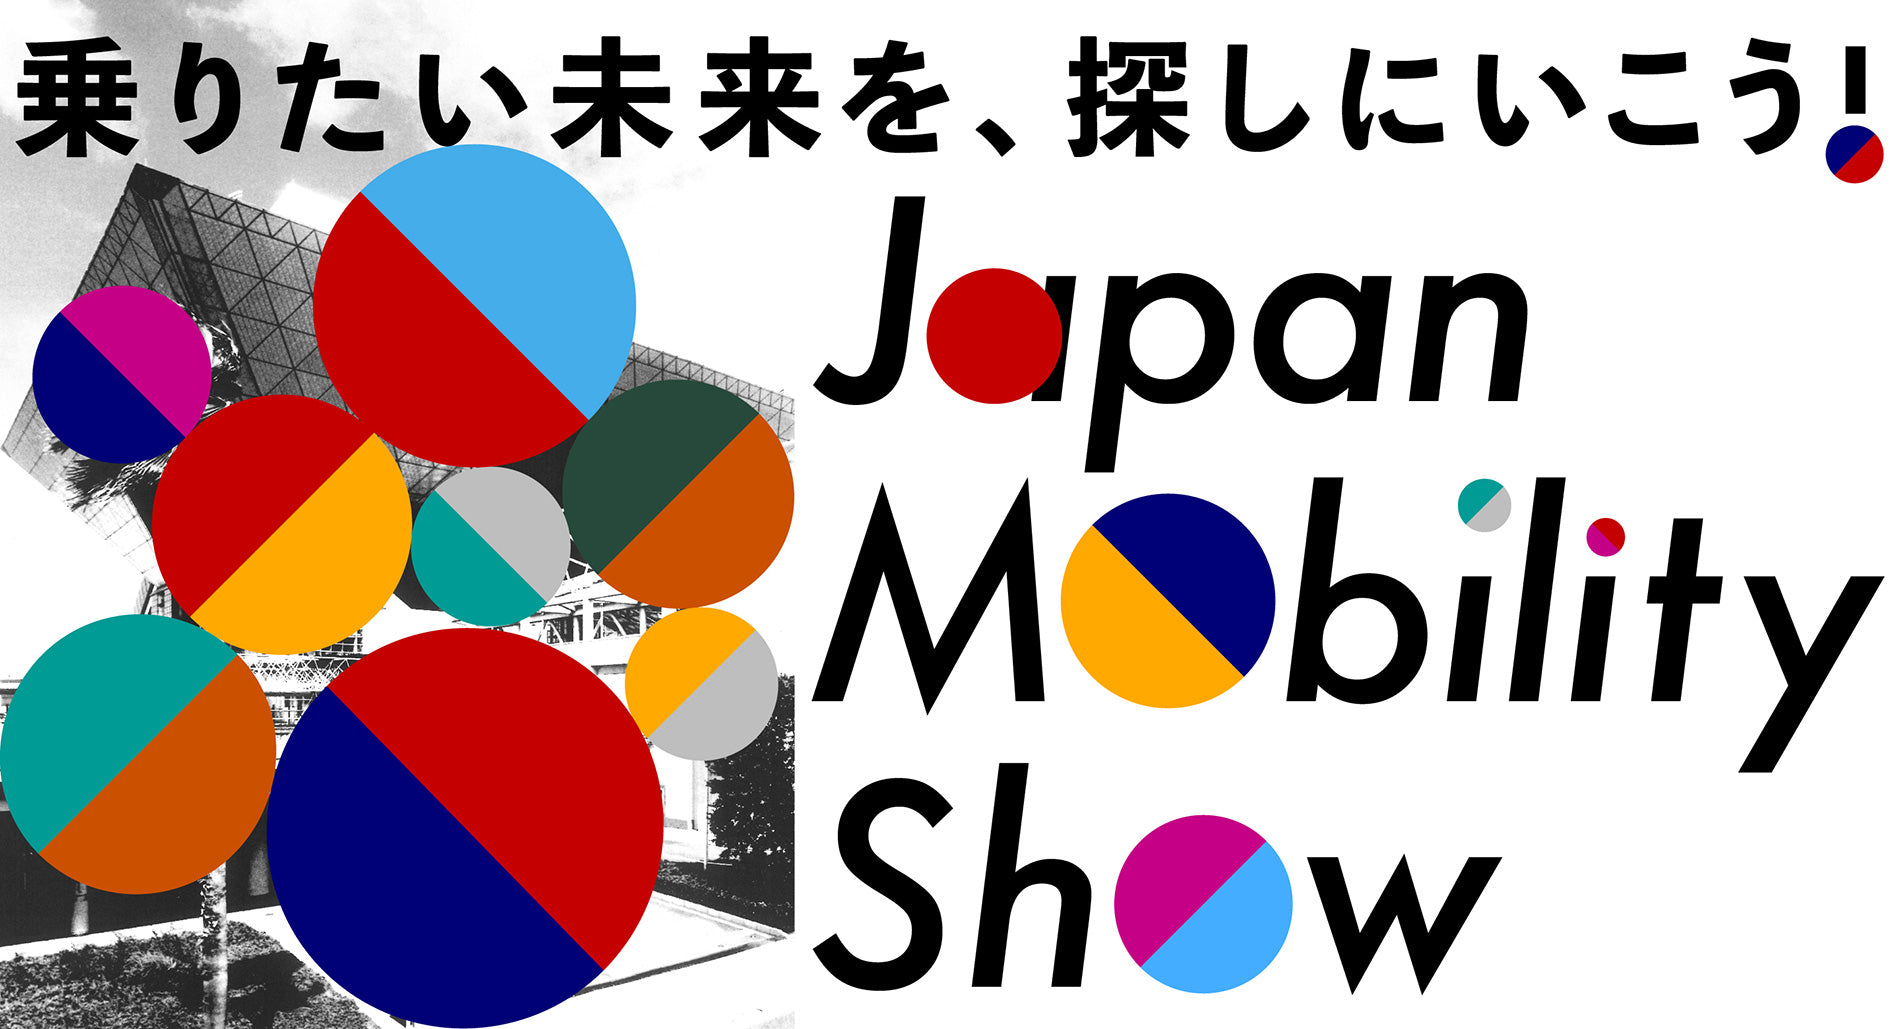 JAPAN MOBIRITHY SHOW 2023へCC1を出展